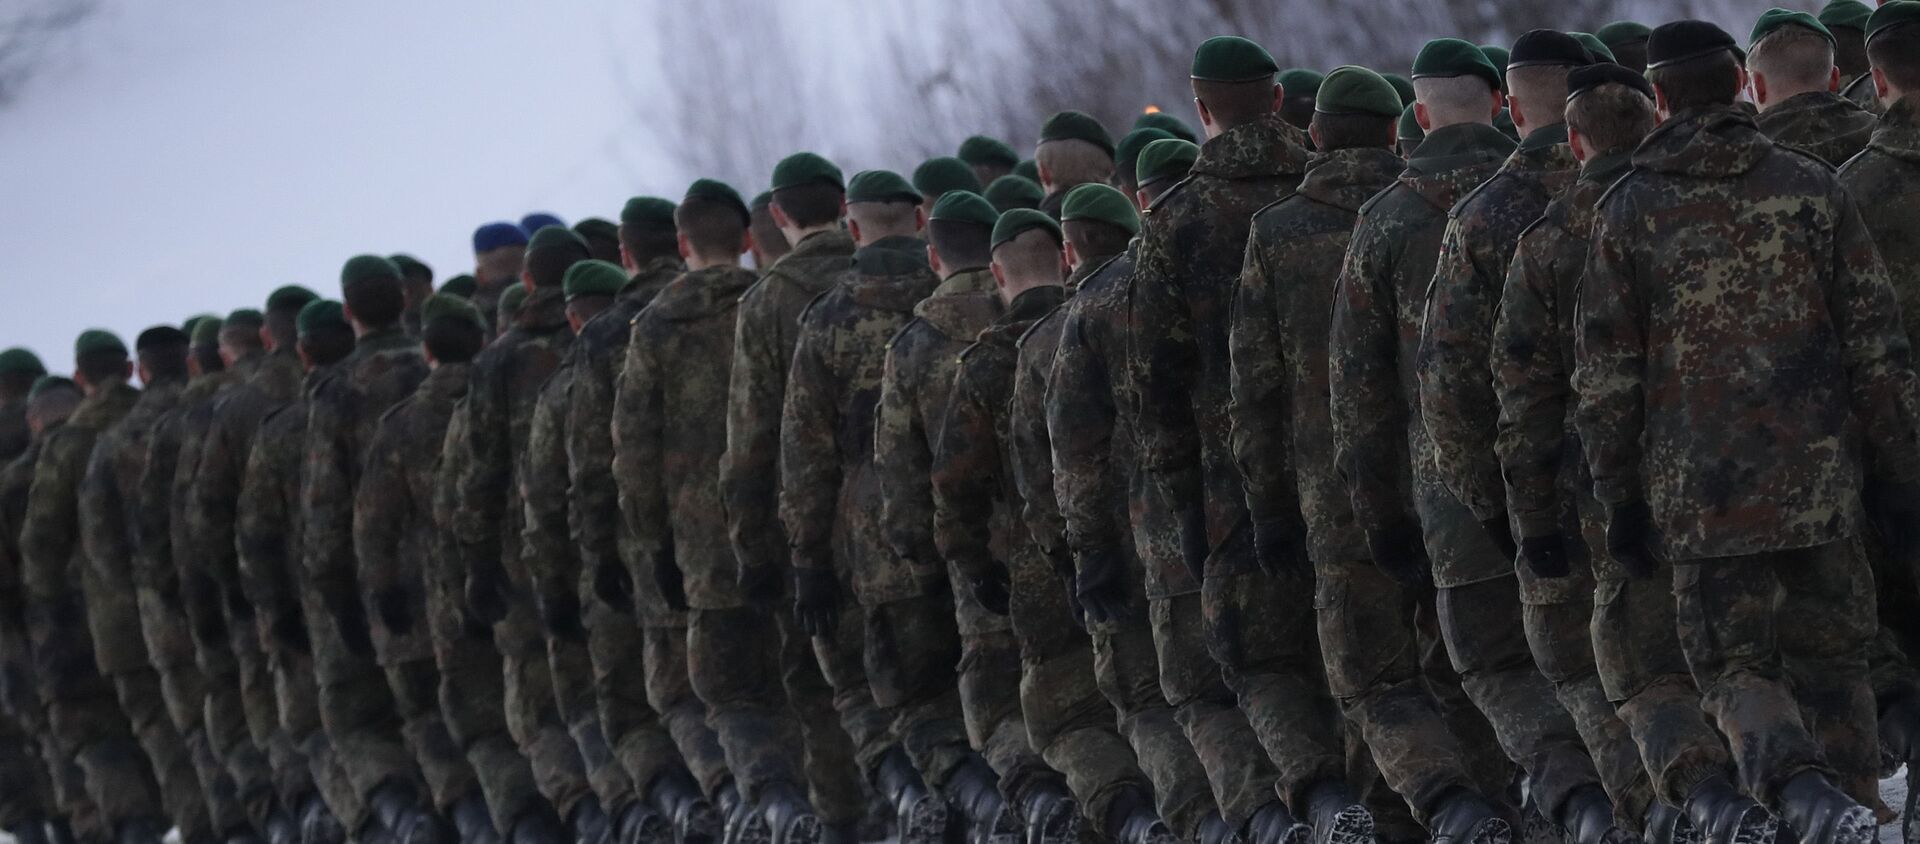 Солдаты 122-ого пехотного батальона Бундесвера направляются на место службы в Литву в рамках расширения военного присутствия НАТО - Sputnik Србија, 1920, 14.04.2021